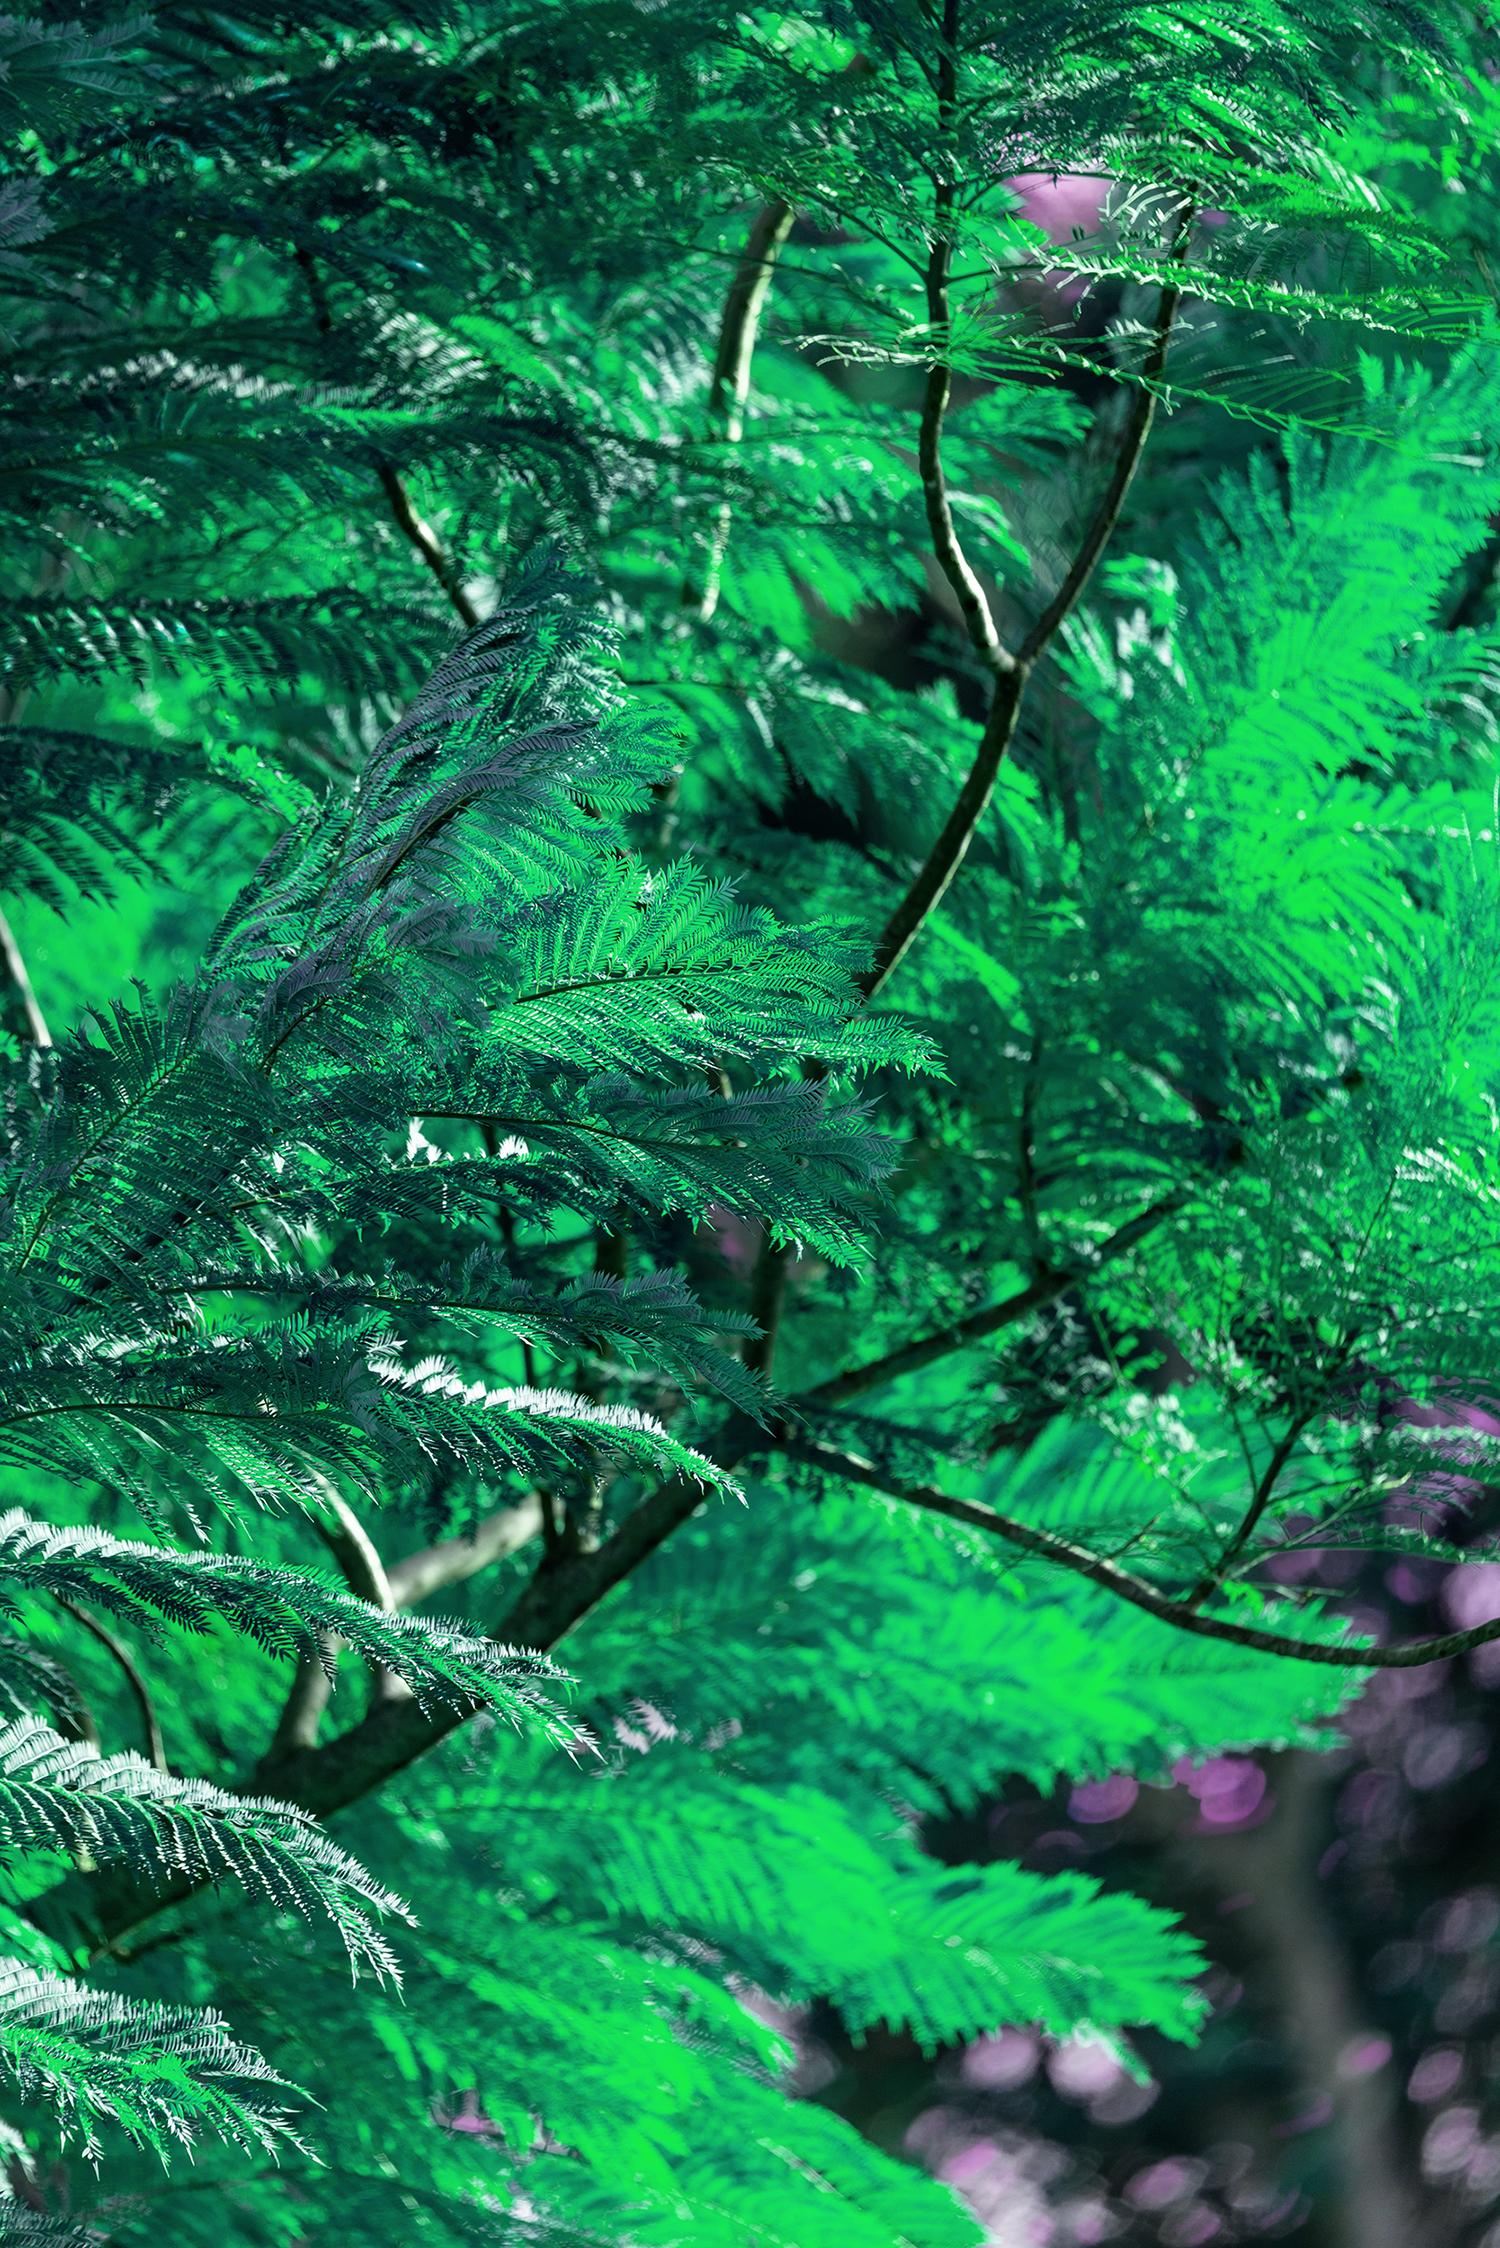 Landscape Photograph Robert Funk - L'arbre perdu dans la pensée :  Vert et violet